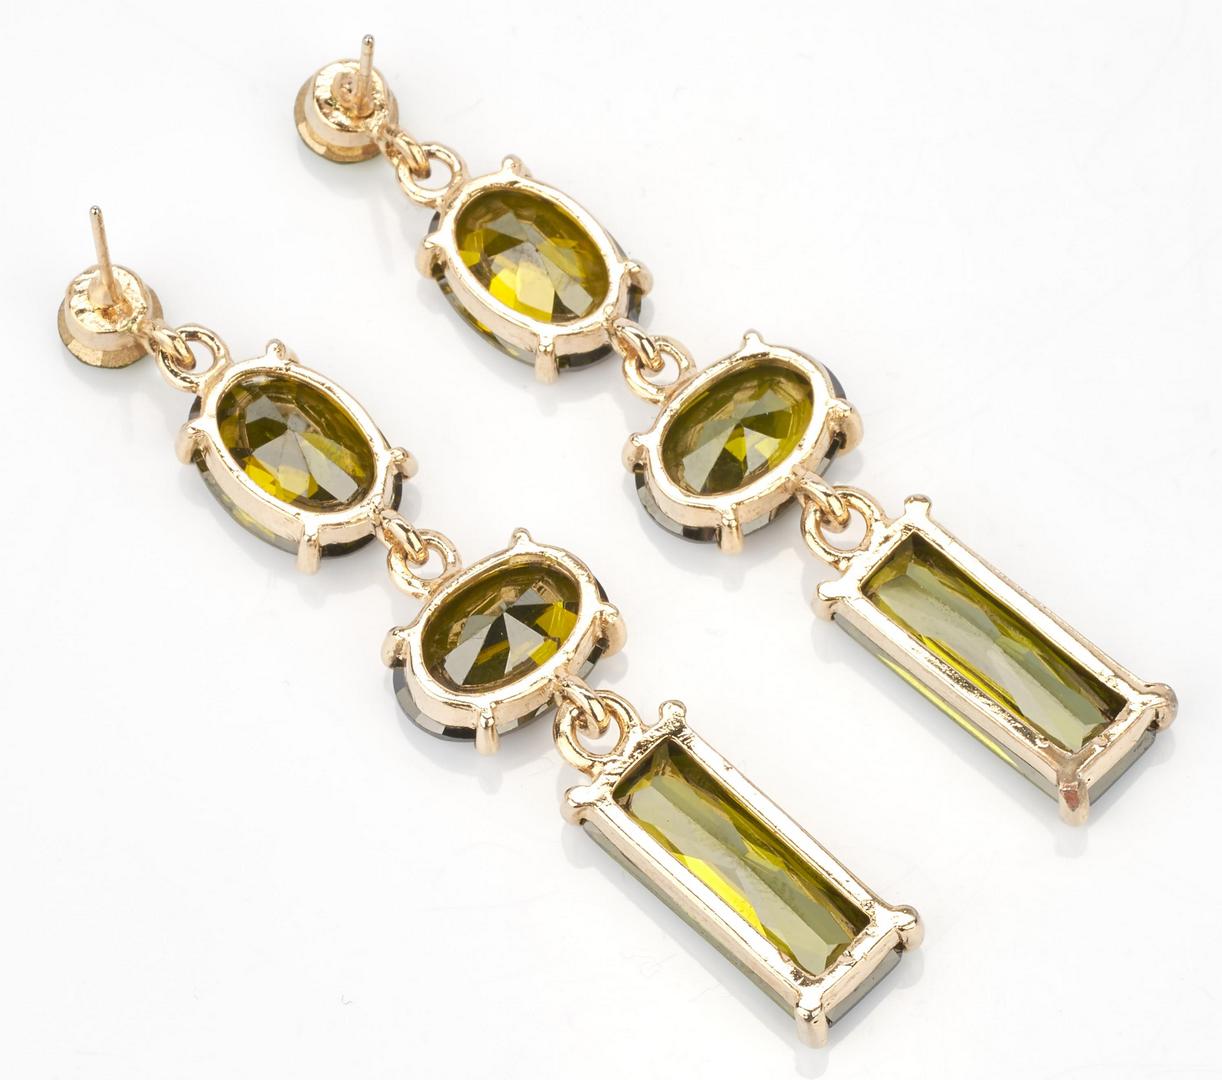 Lot 922: 3 Pairs of Ladies Gemstone Earrings